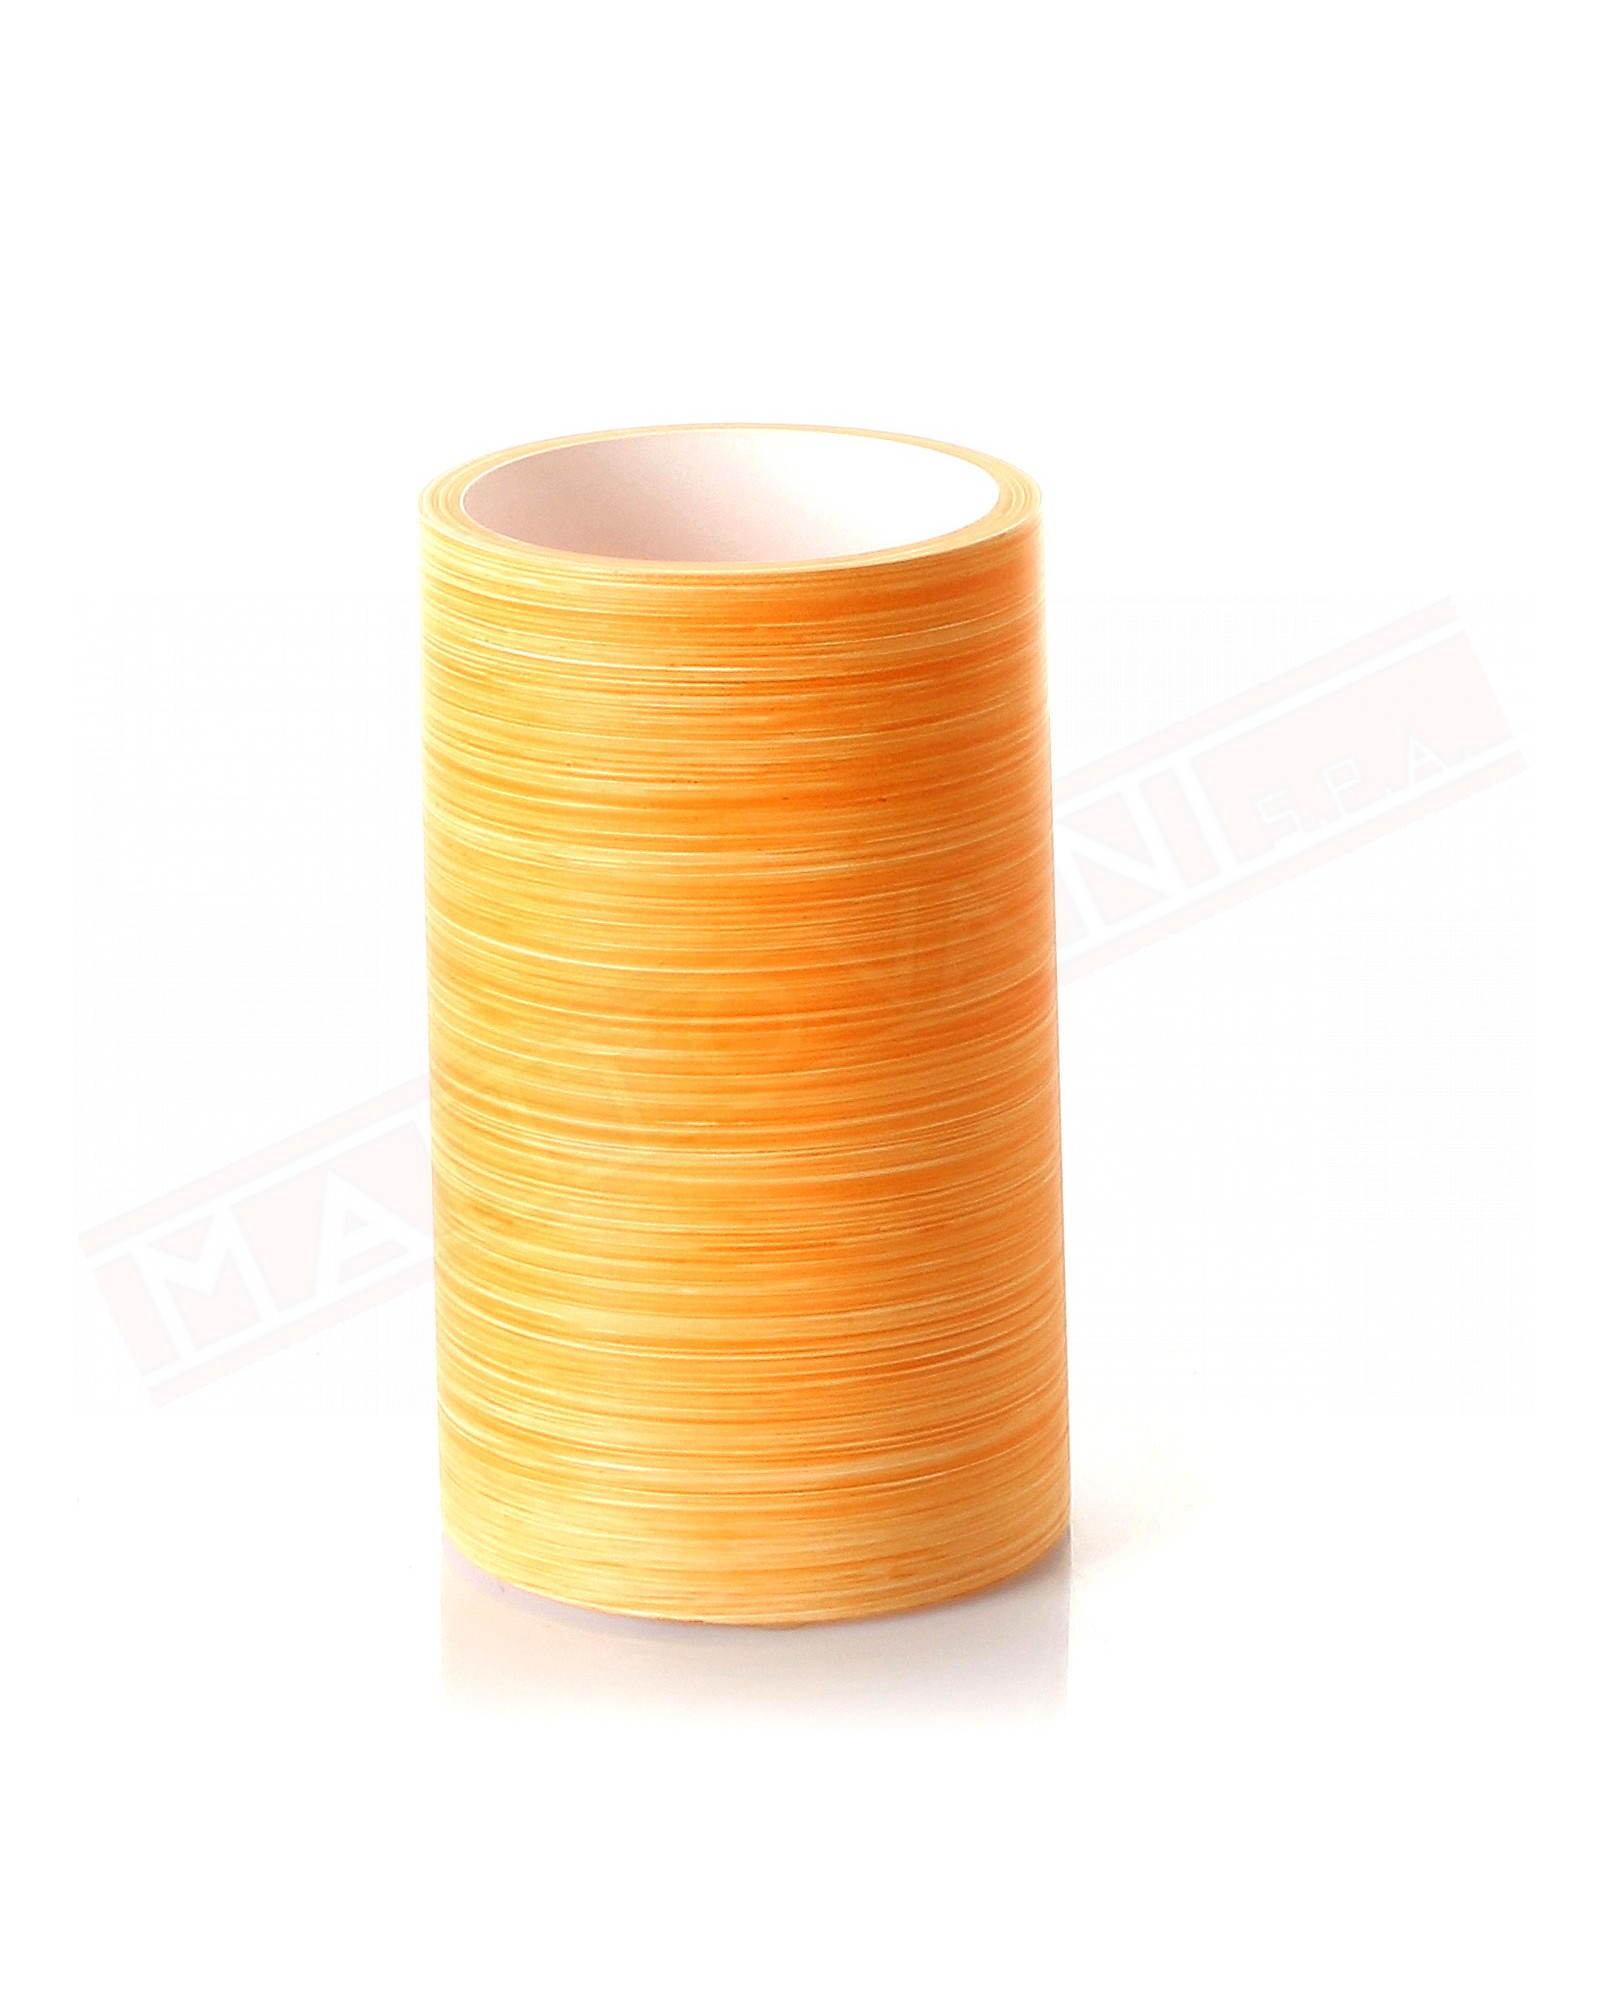 Gedy G. Sole portaspazzolini in resina color arancio misure diametro art 7,2x12,2